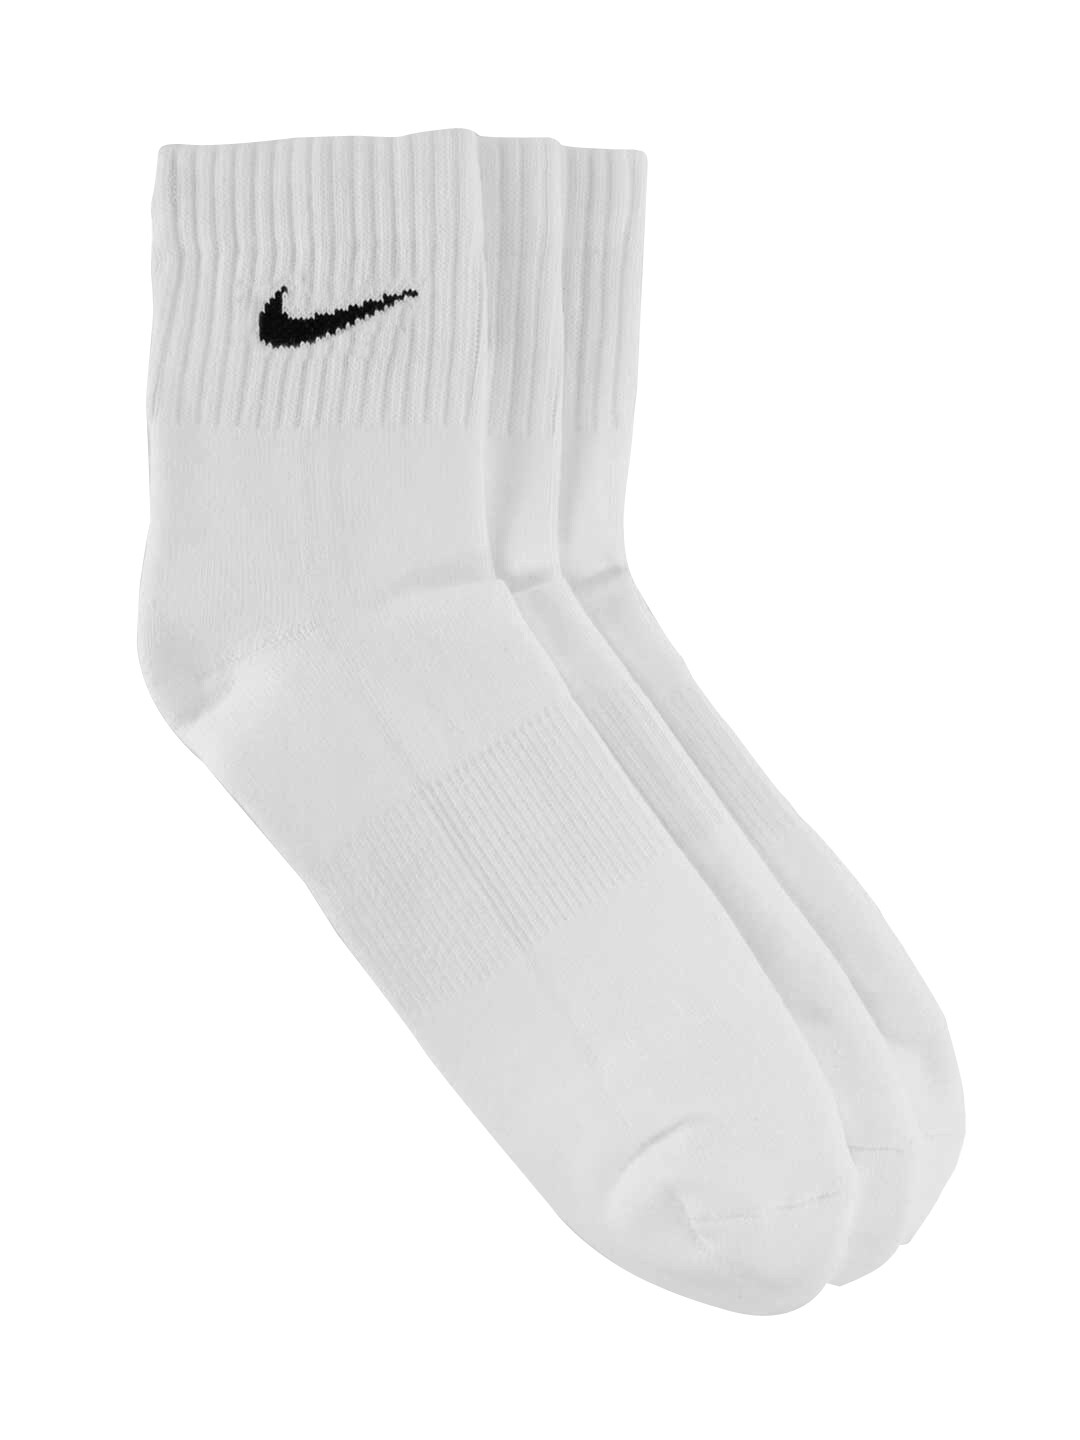 Nike Unisex Pack of 3 Socks